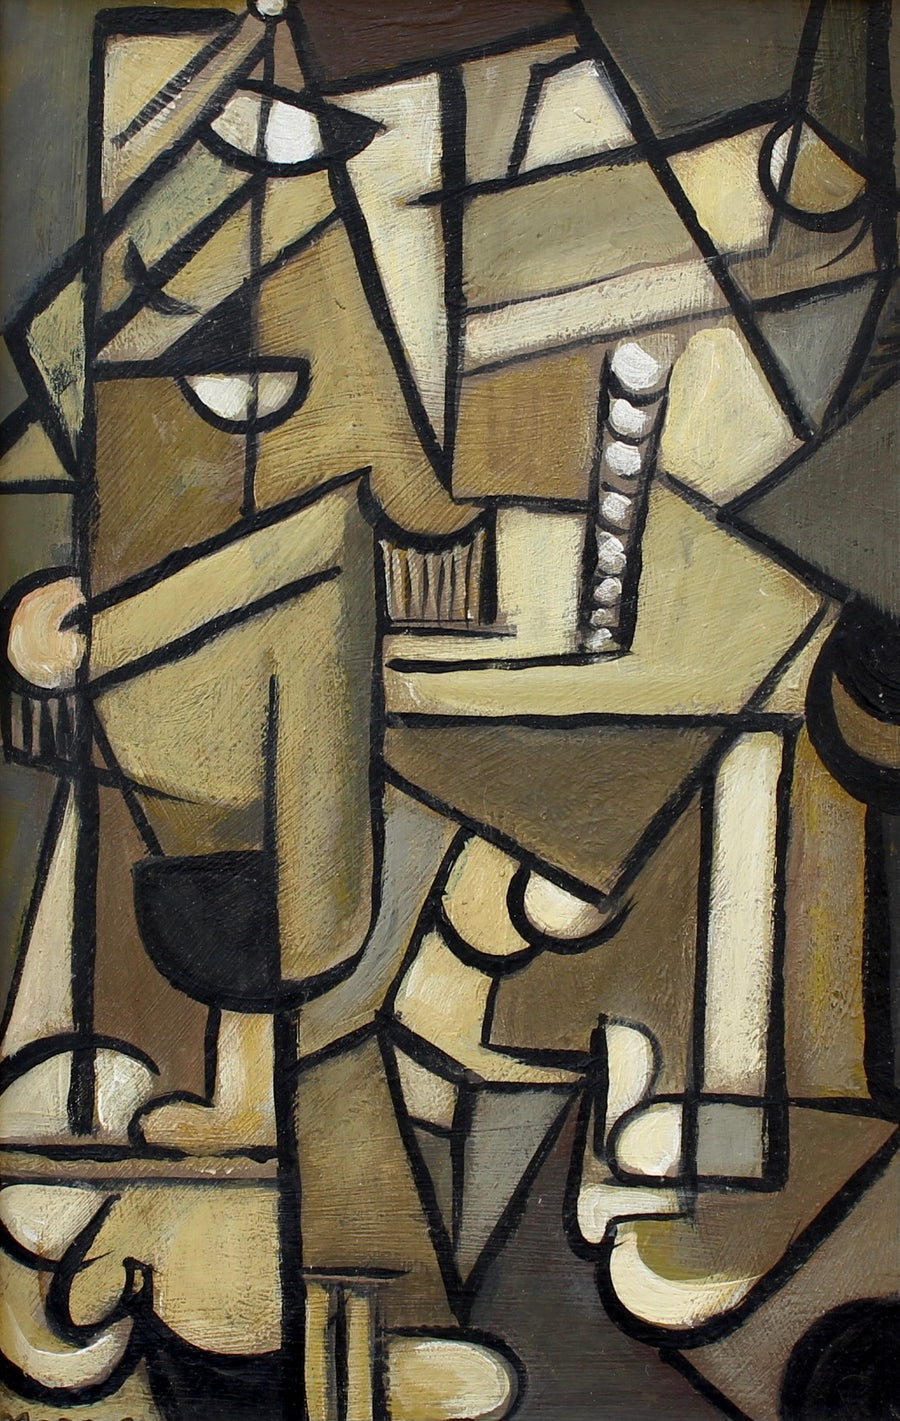 'Arrangement in Cubism' School of Berlin (circa 1960s-70s)